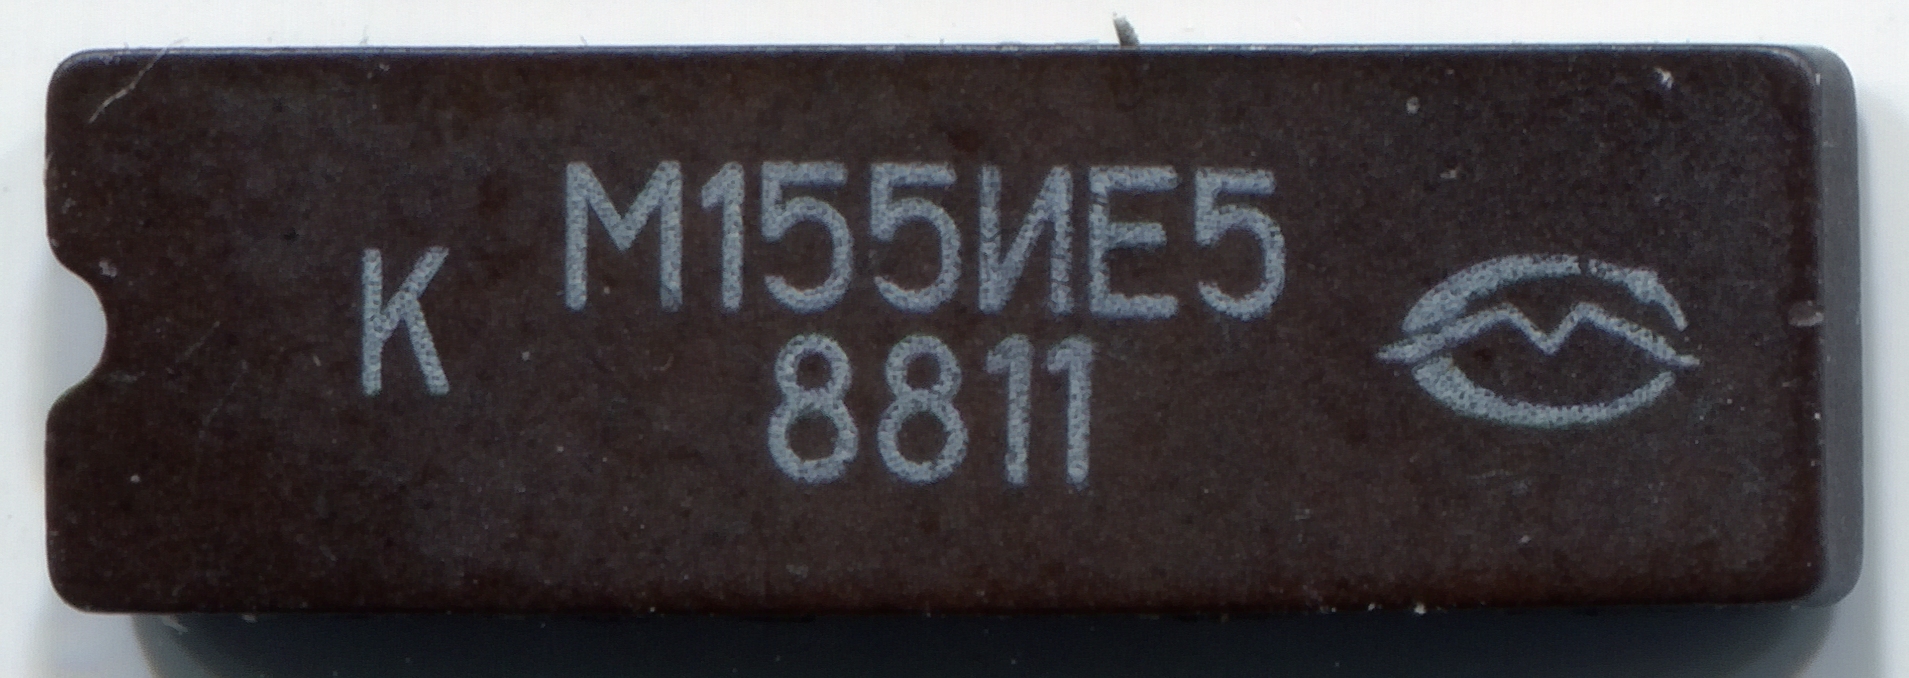 КМ155ИЕ5 88 0 М